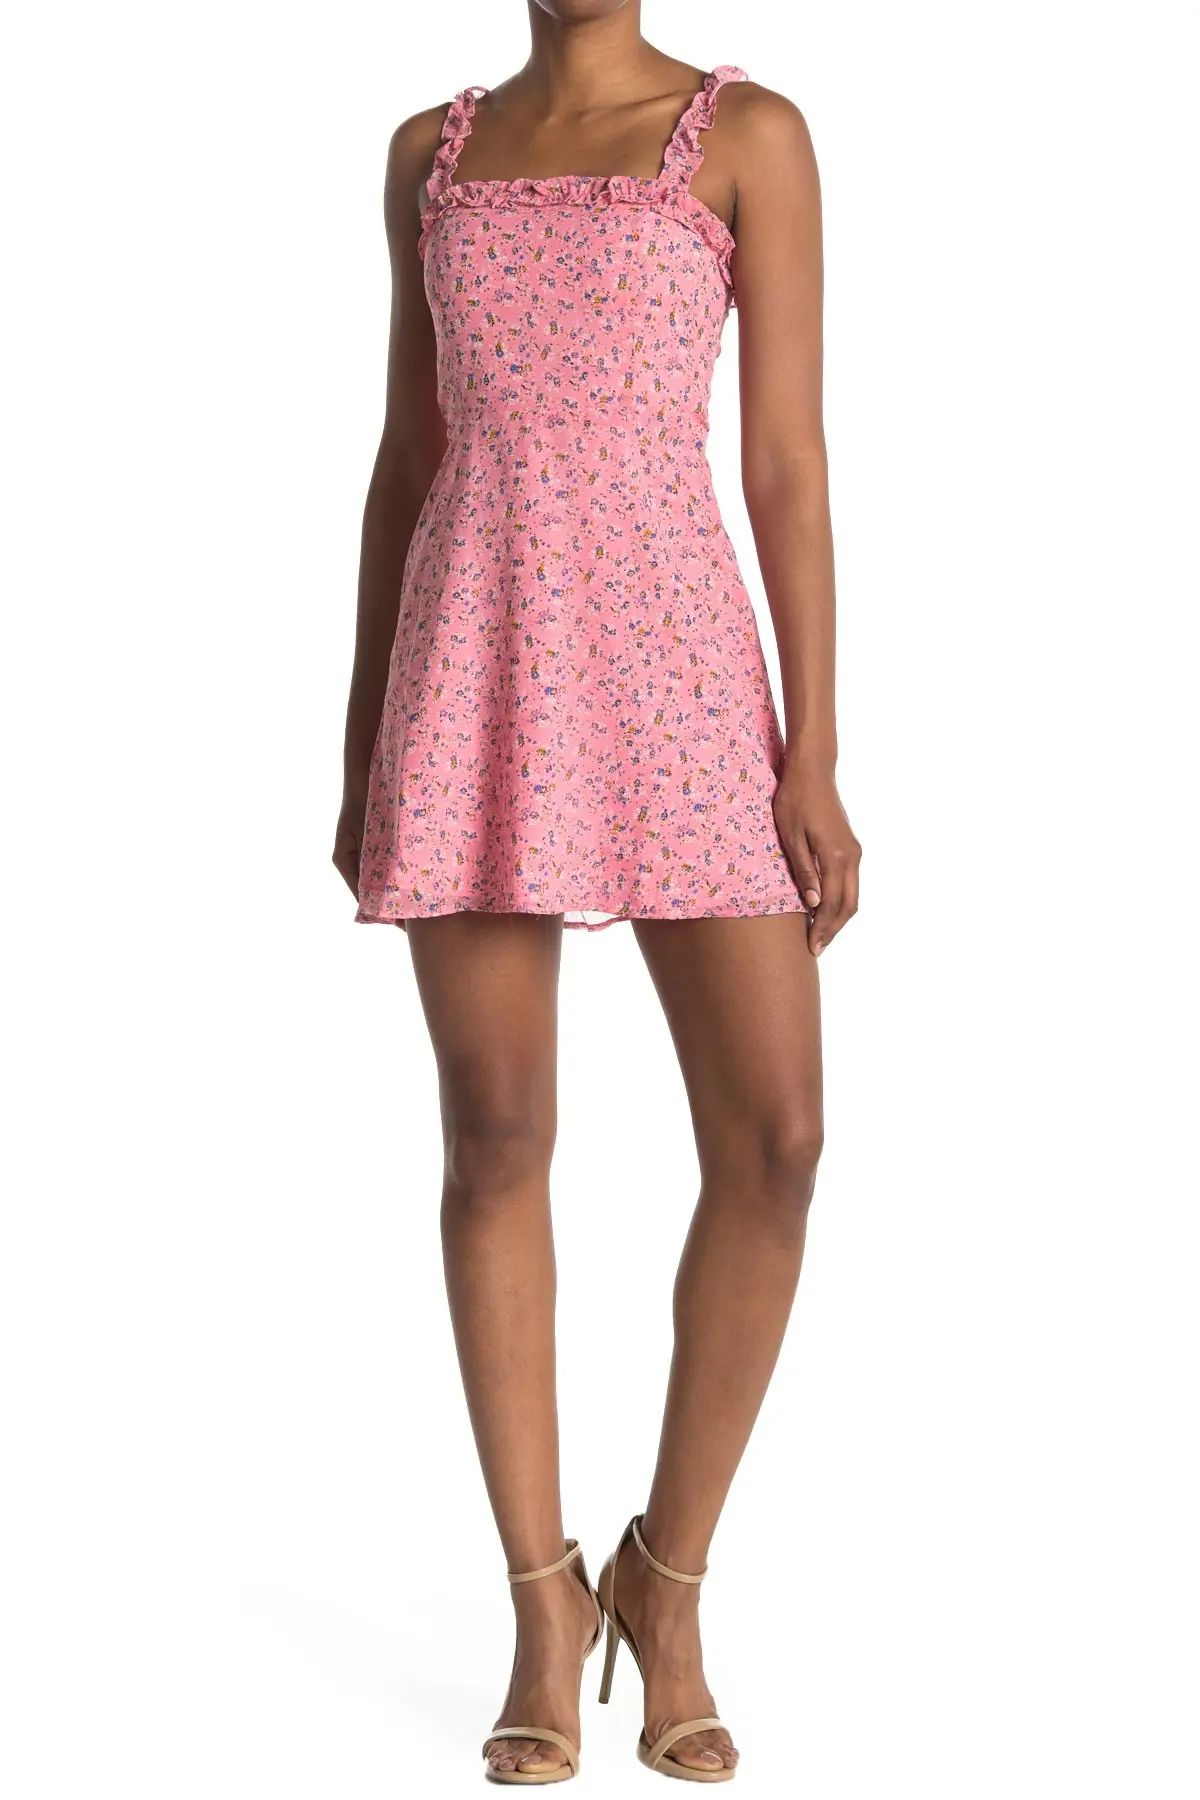 re:named apparel Marley Floral Mini Dress at Nordstrom Rack | Nordstrom Rack